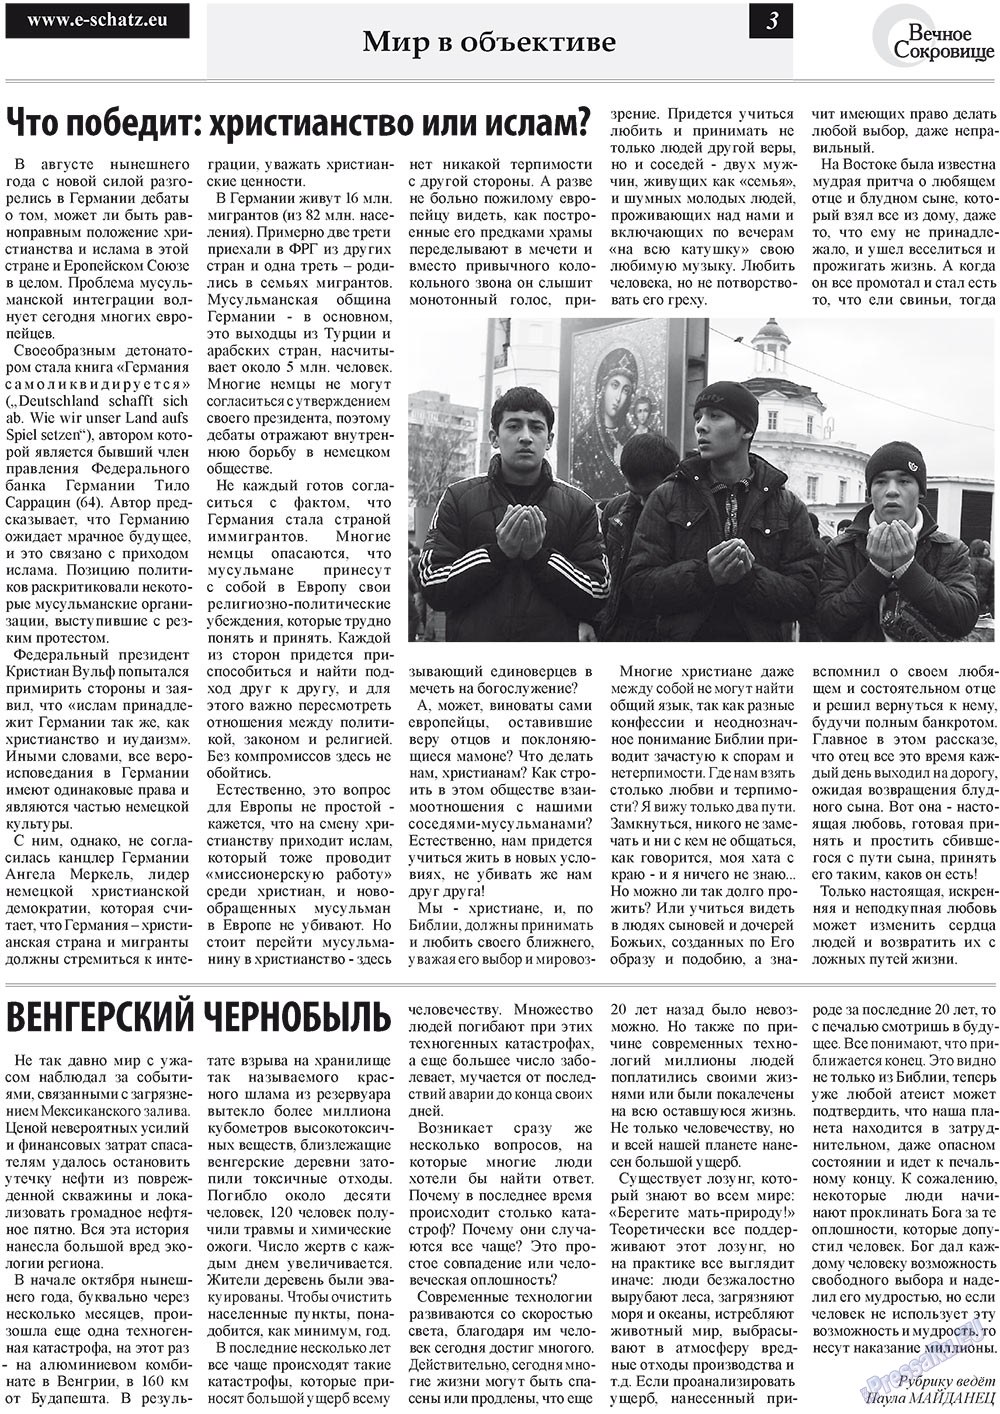 Вечное сокровище (газета). 2010 год, номер 4, стр. 3